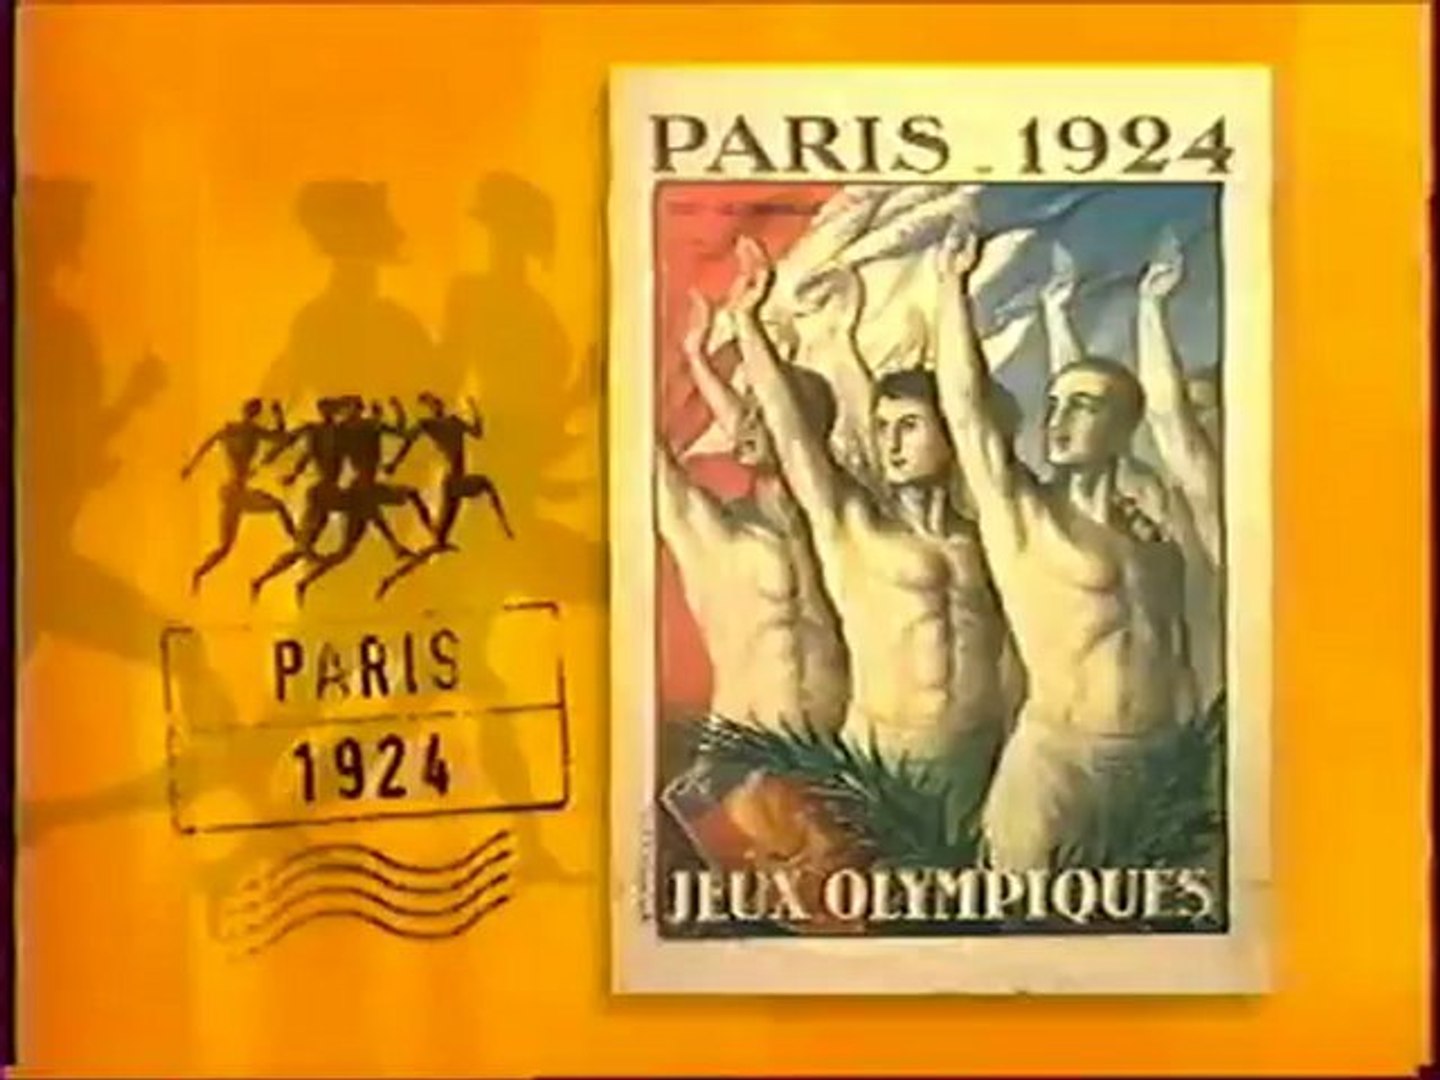 Jeux Olympiques : L'histoire du drapeau olympique - Vidéo Dailymotion